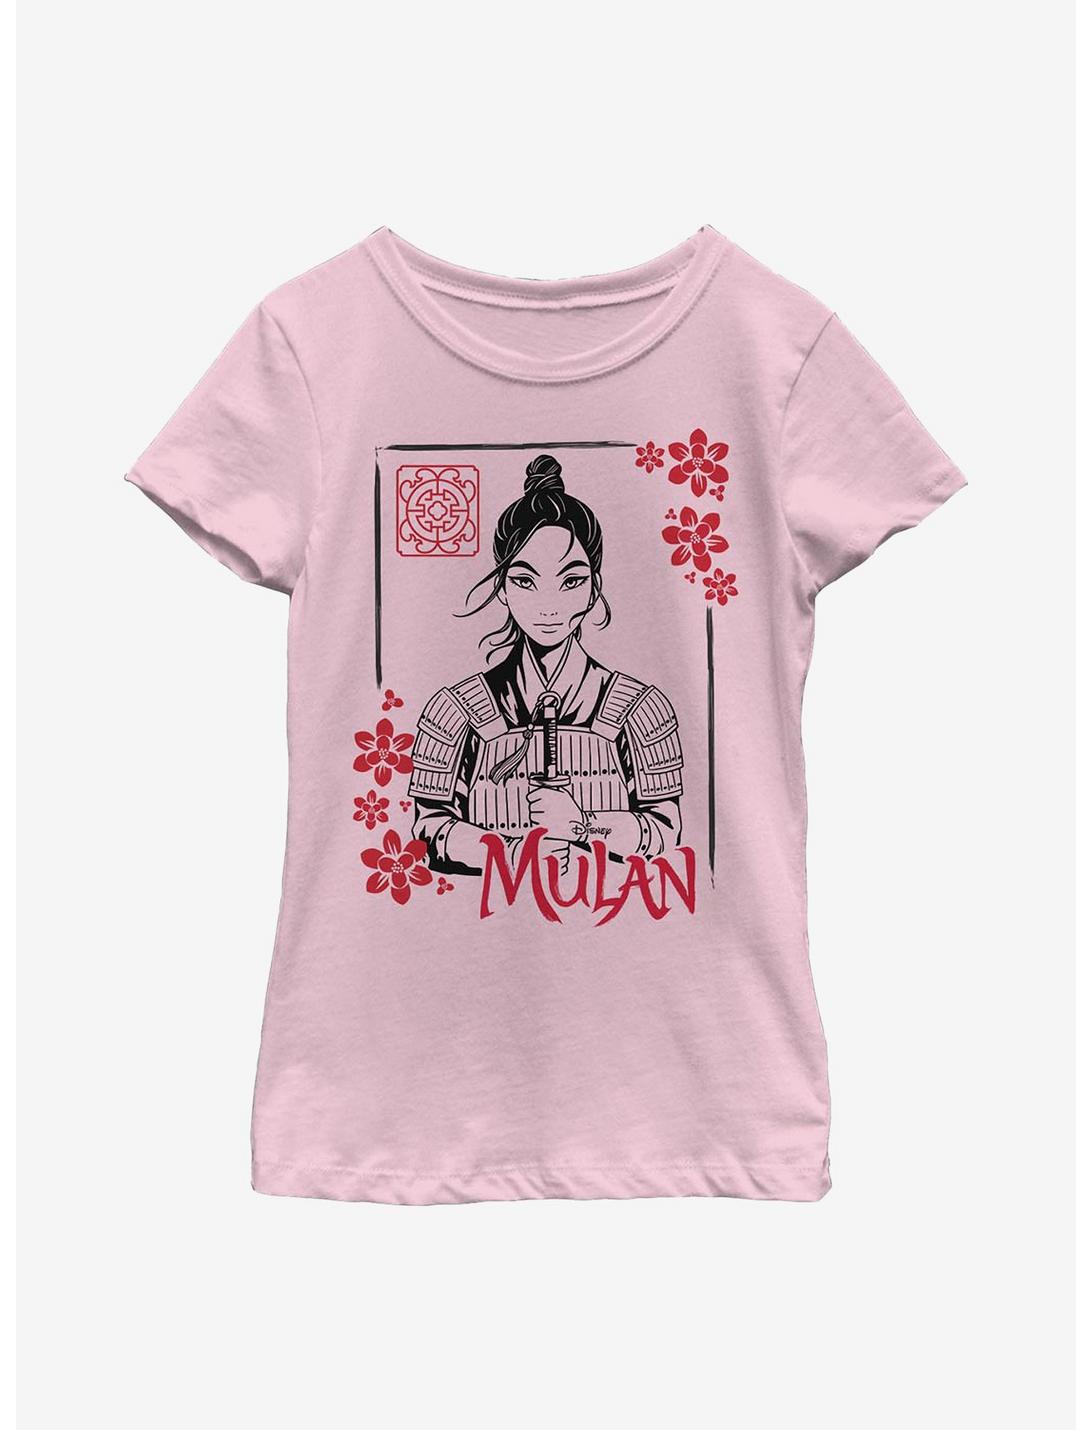 Disney Mulan Ink Line Youth Girls T-Shirt, PINK, hi-res